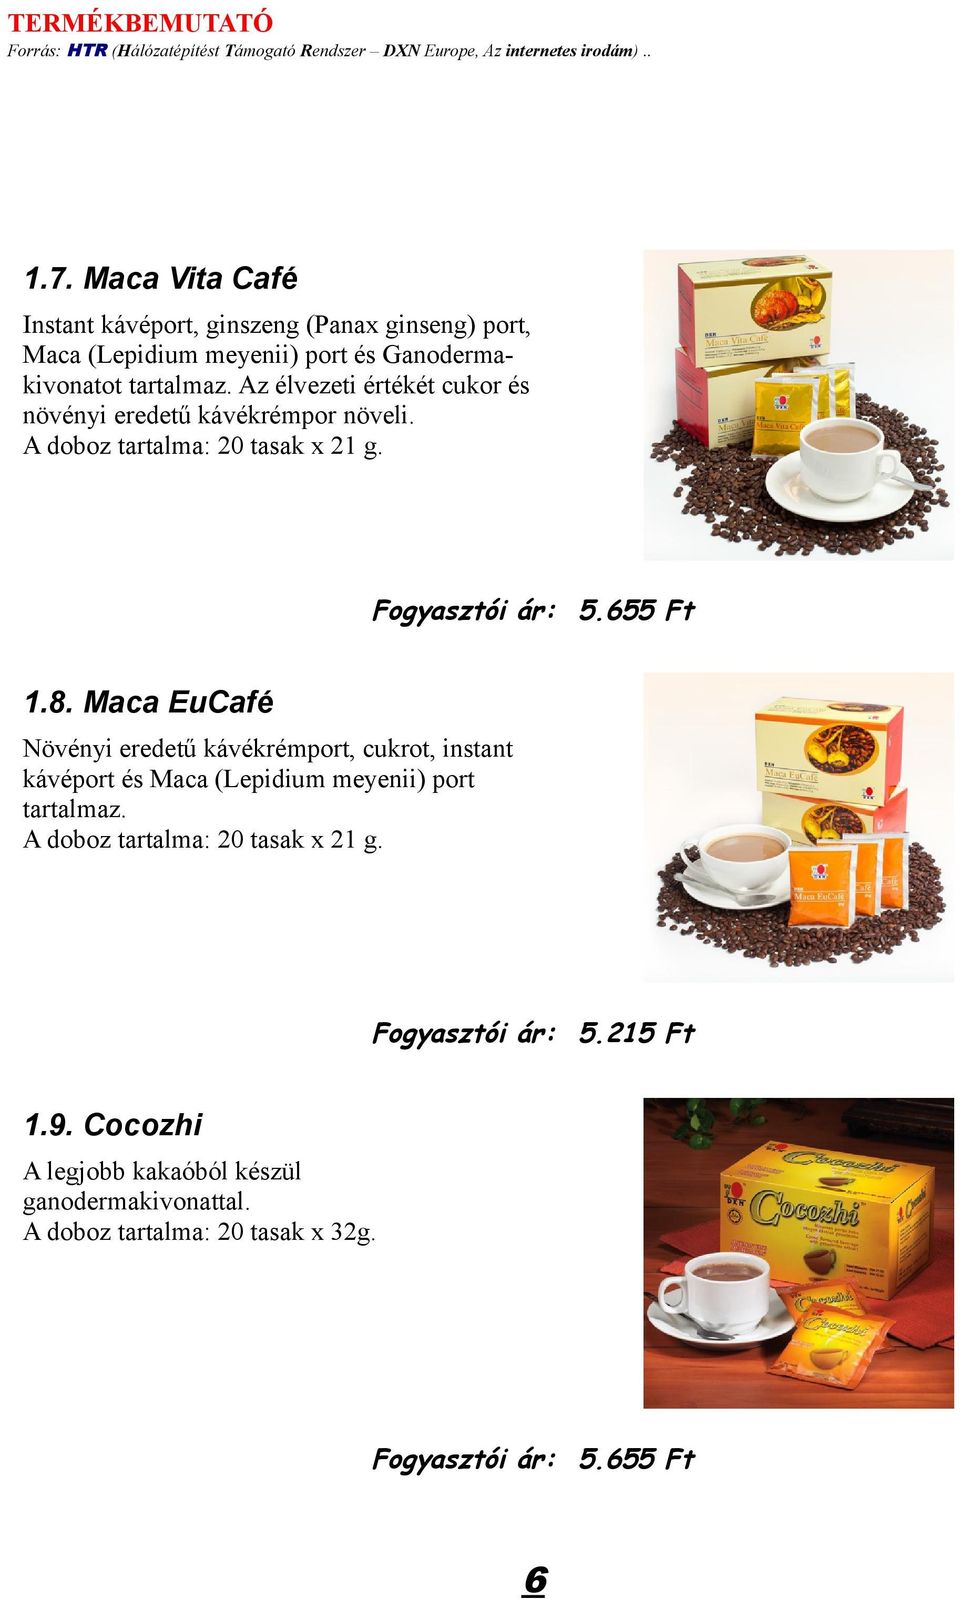 Maca EuCafé Növényi eredetű kávékrémport, cukrot, instant kávéport és Maca (Lepidium meyenii) port tartalmaz.